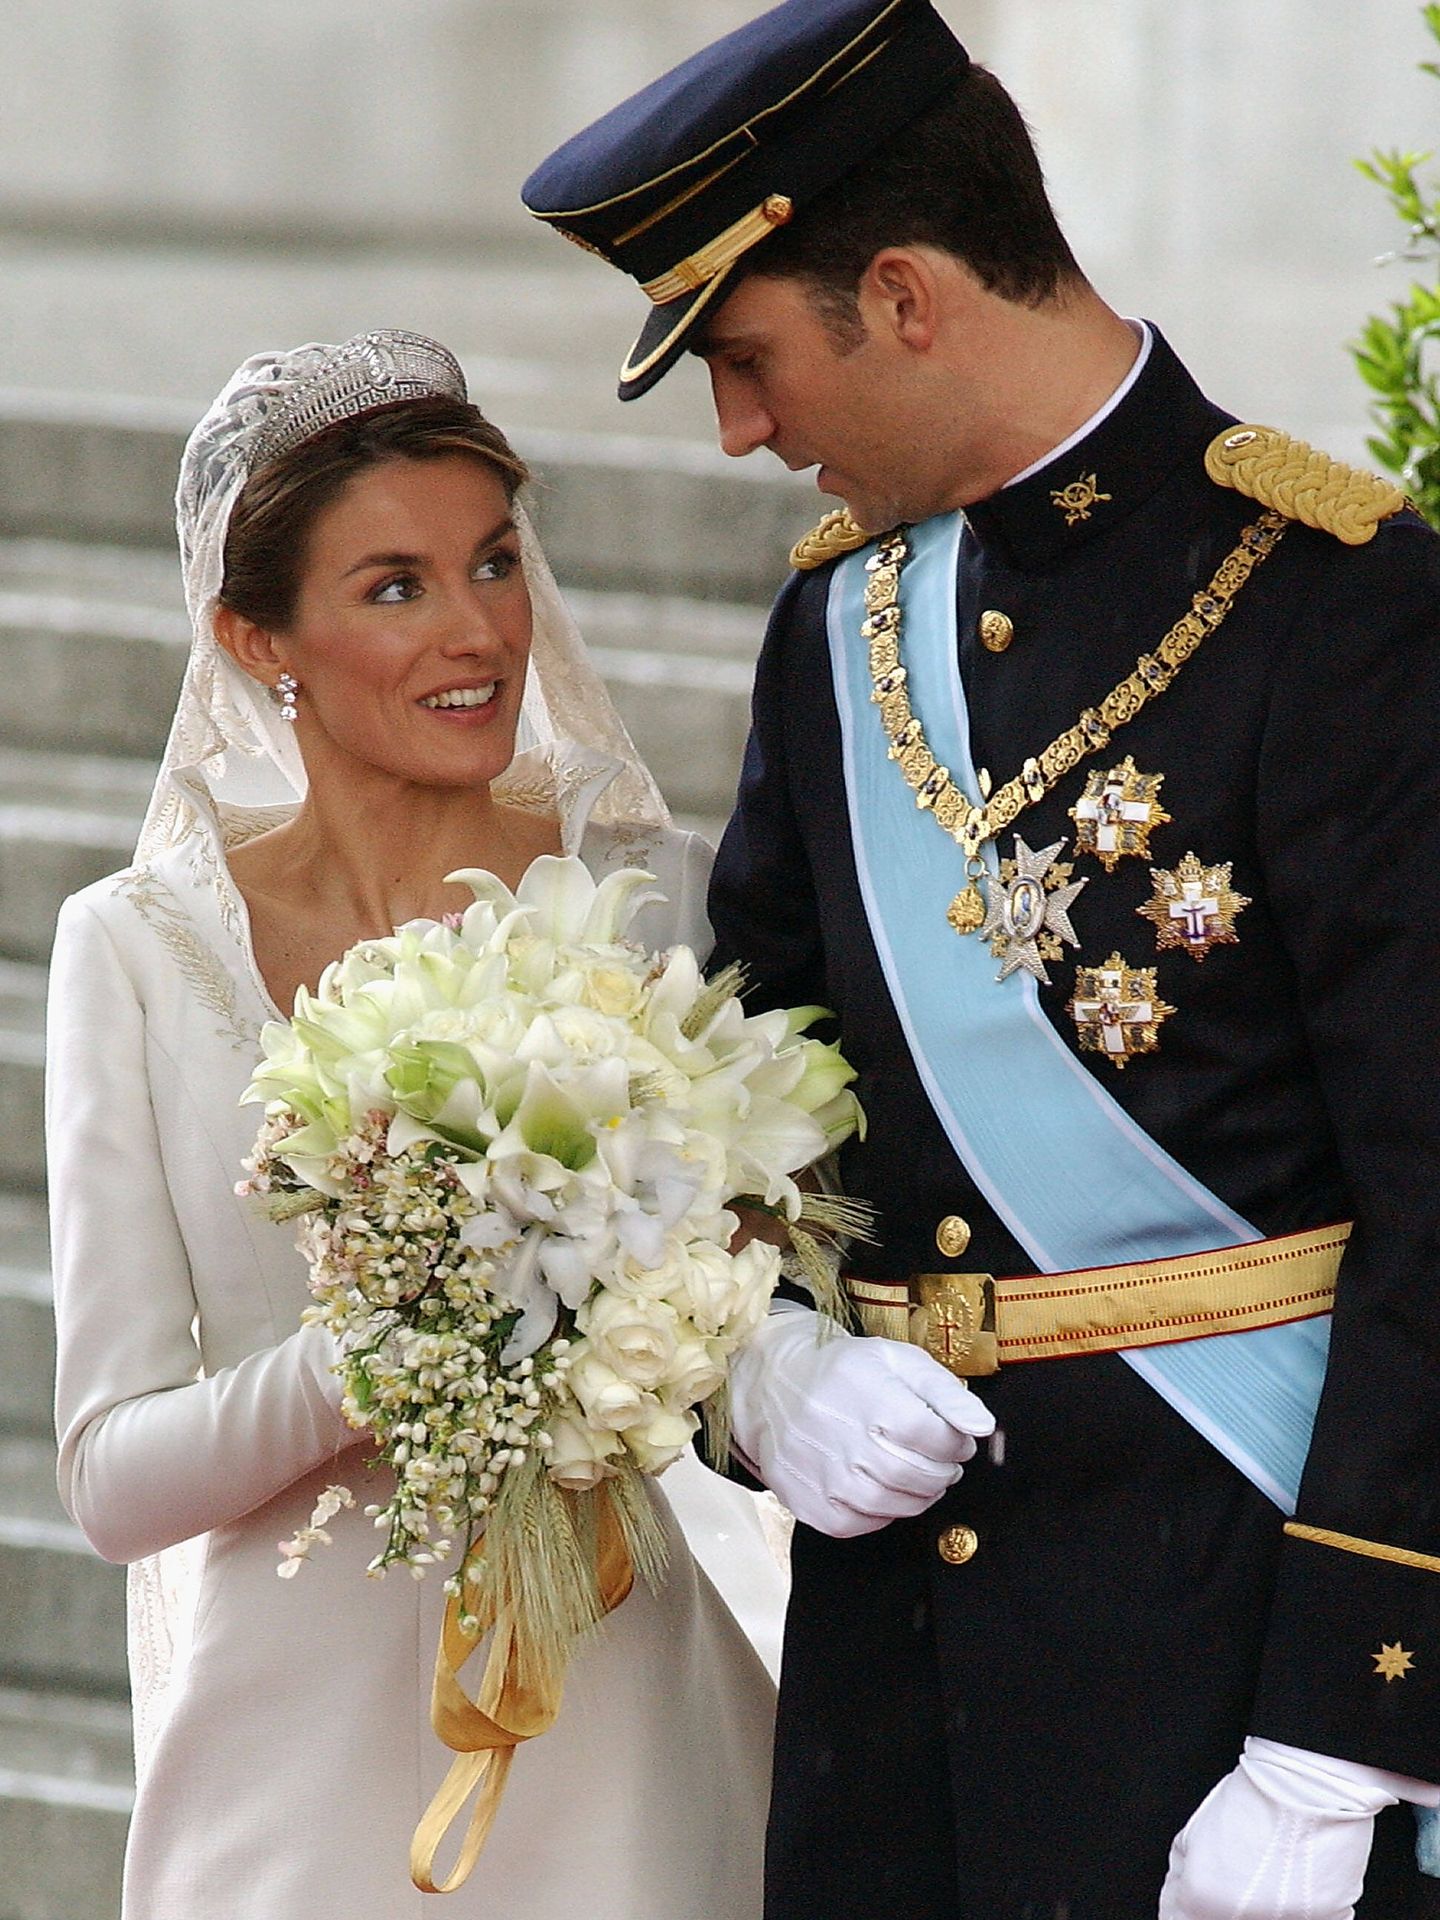 La boda de Felipe y Letizia. (Carlos Alvarez/Getty Images)